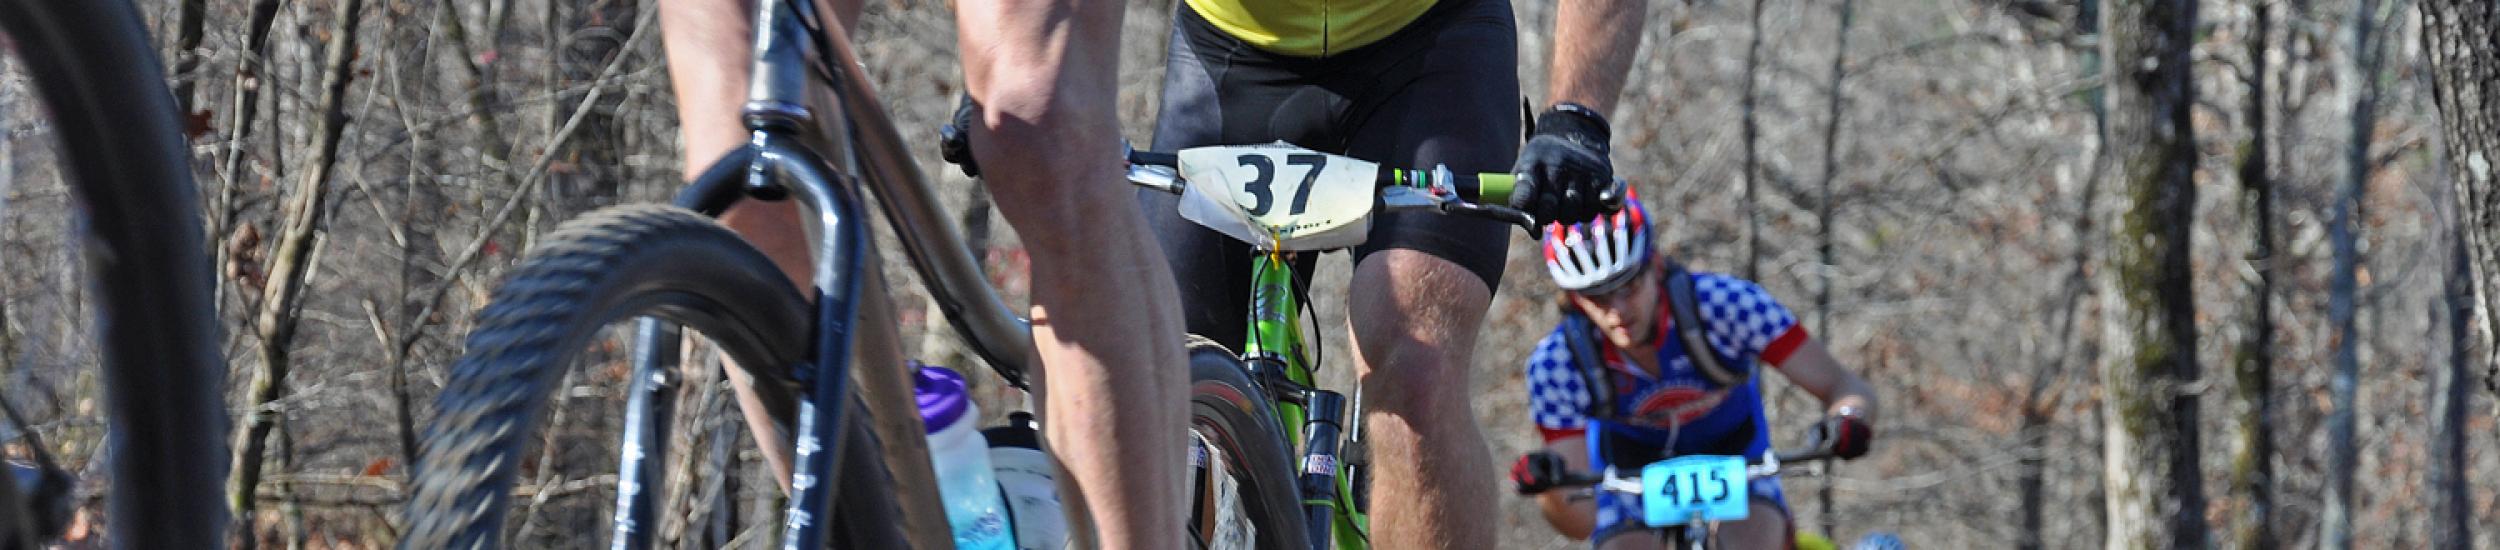 News: Mountain bike: in valbrevenna ritornano le aquile, a due ruote